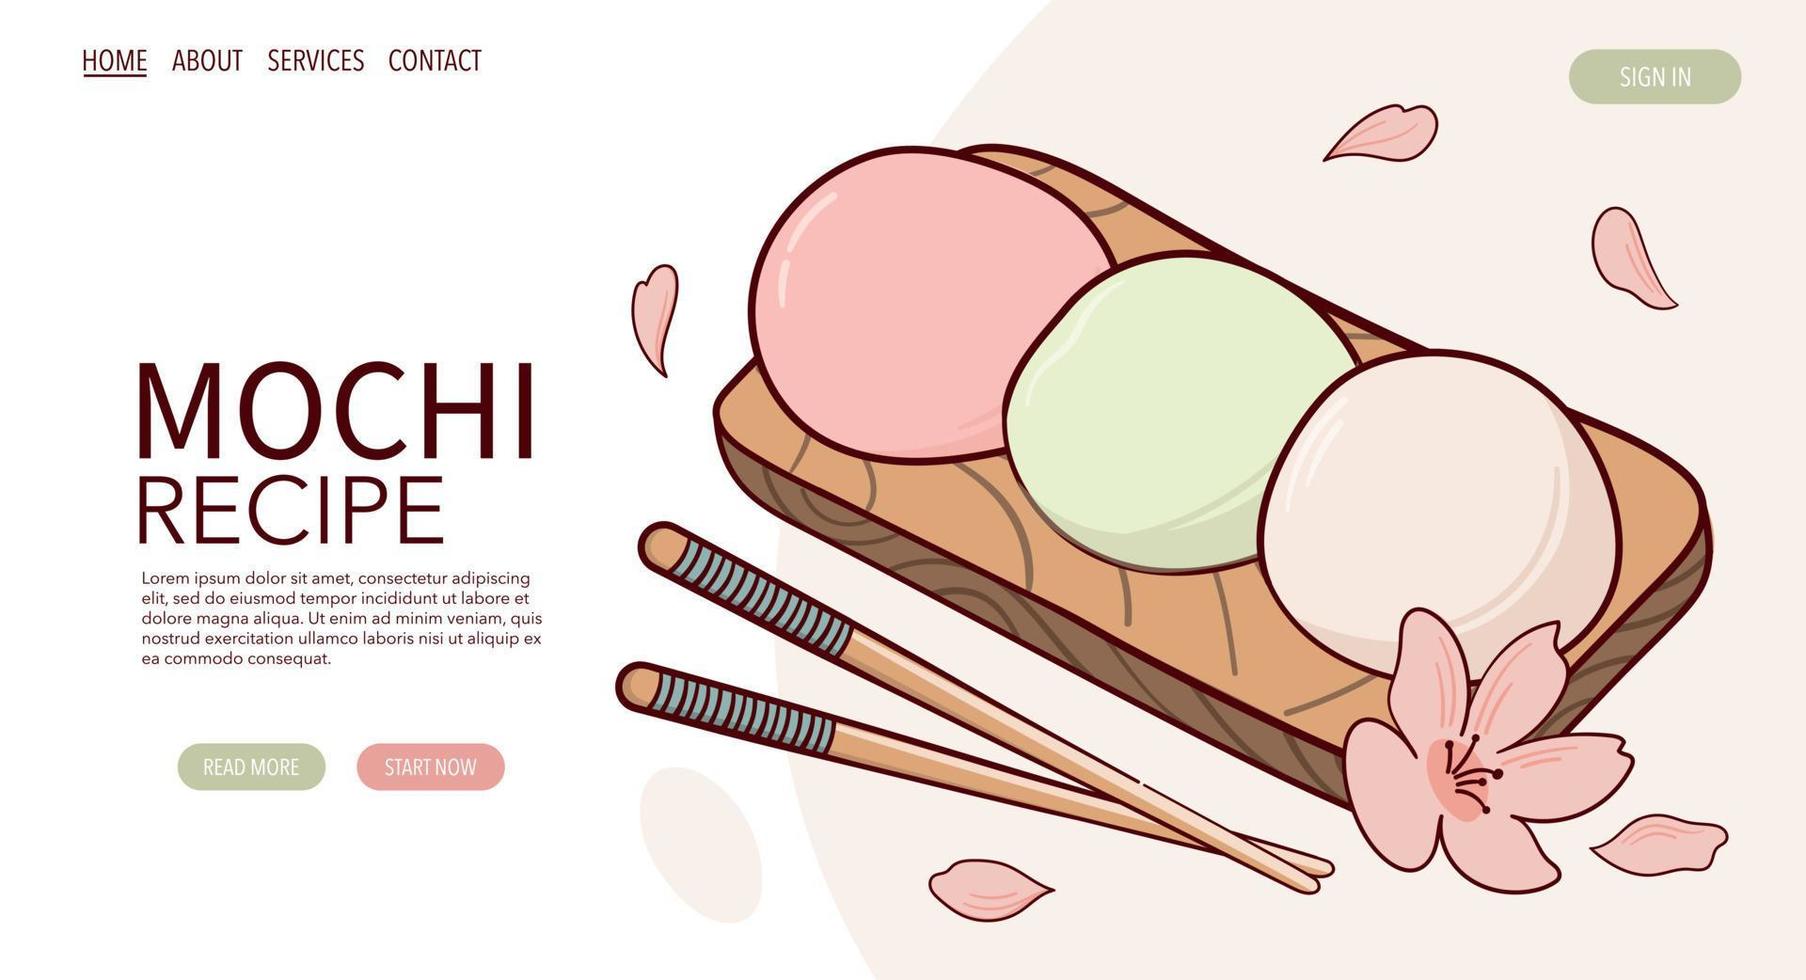 página web dibujar fjapan tradición dulce mochi vector ilustración. comida tradicional asiática japonesa, cocina, concepto de menú. banner, sitio web, publicidad en estilo de dibujos animados de garabatos.